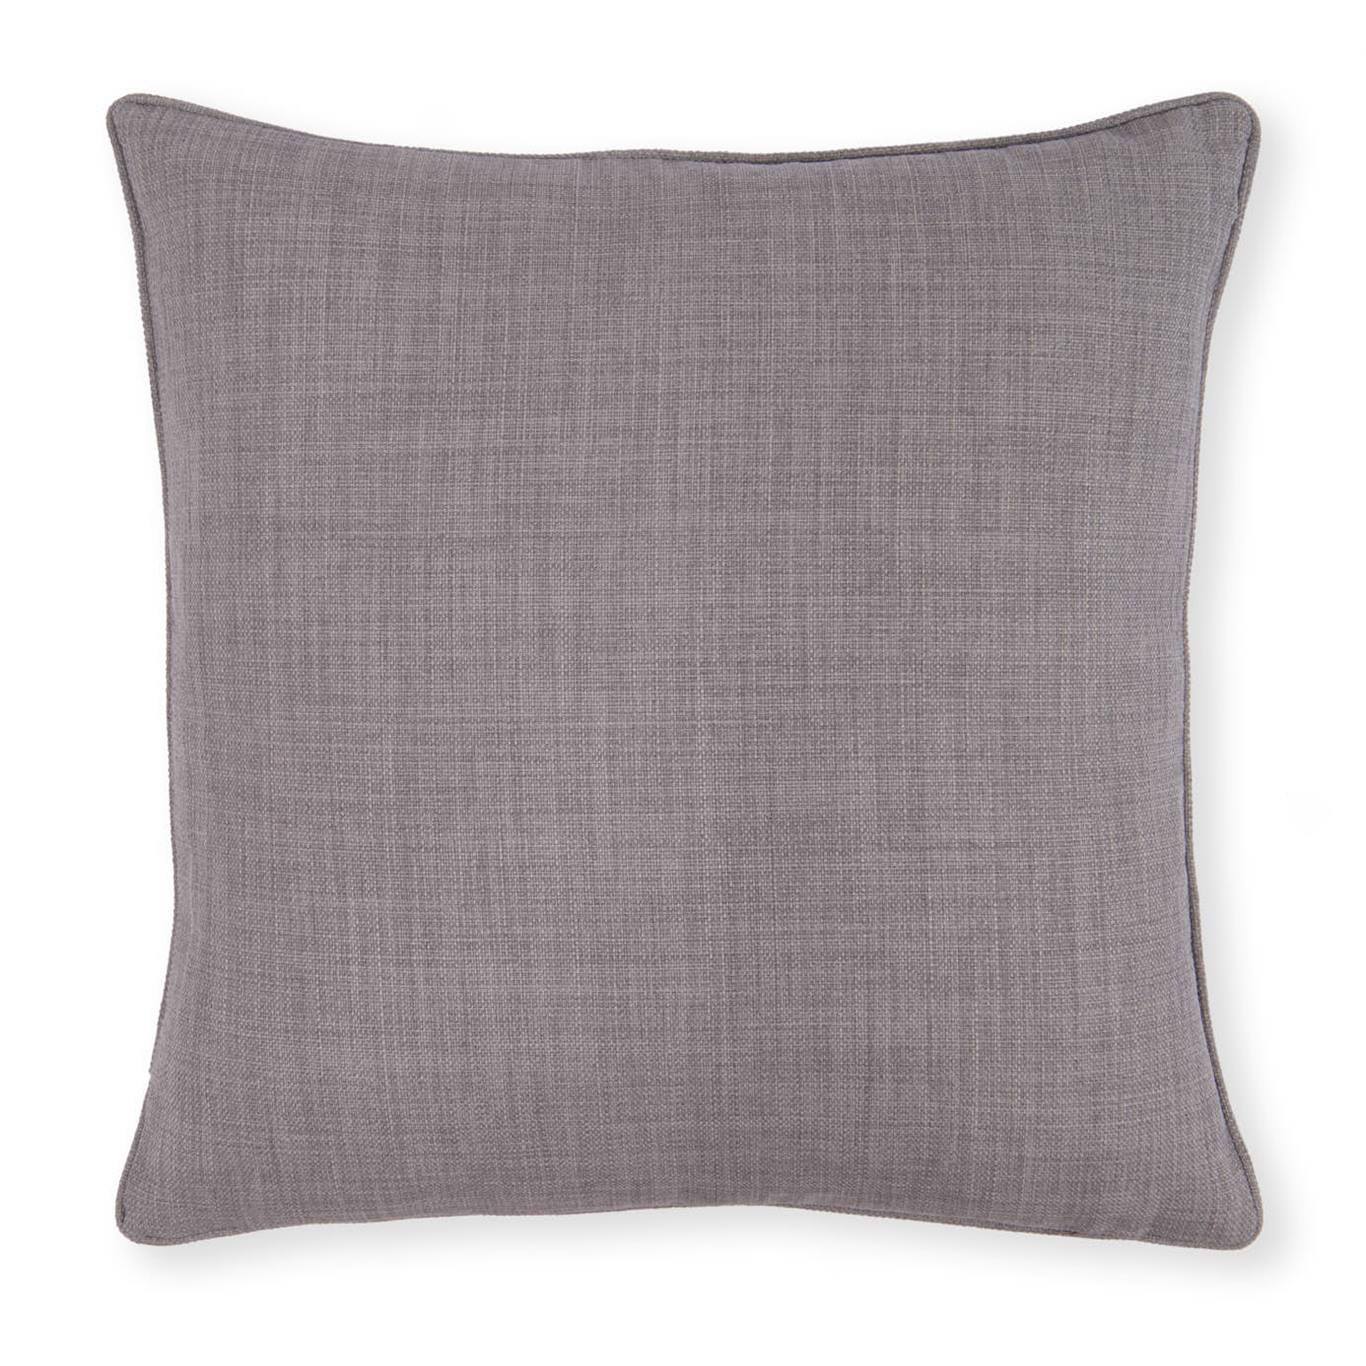 Elba Grey Cushions by STG